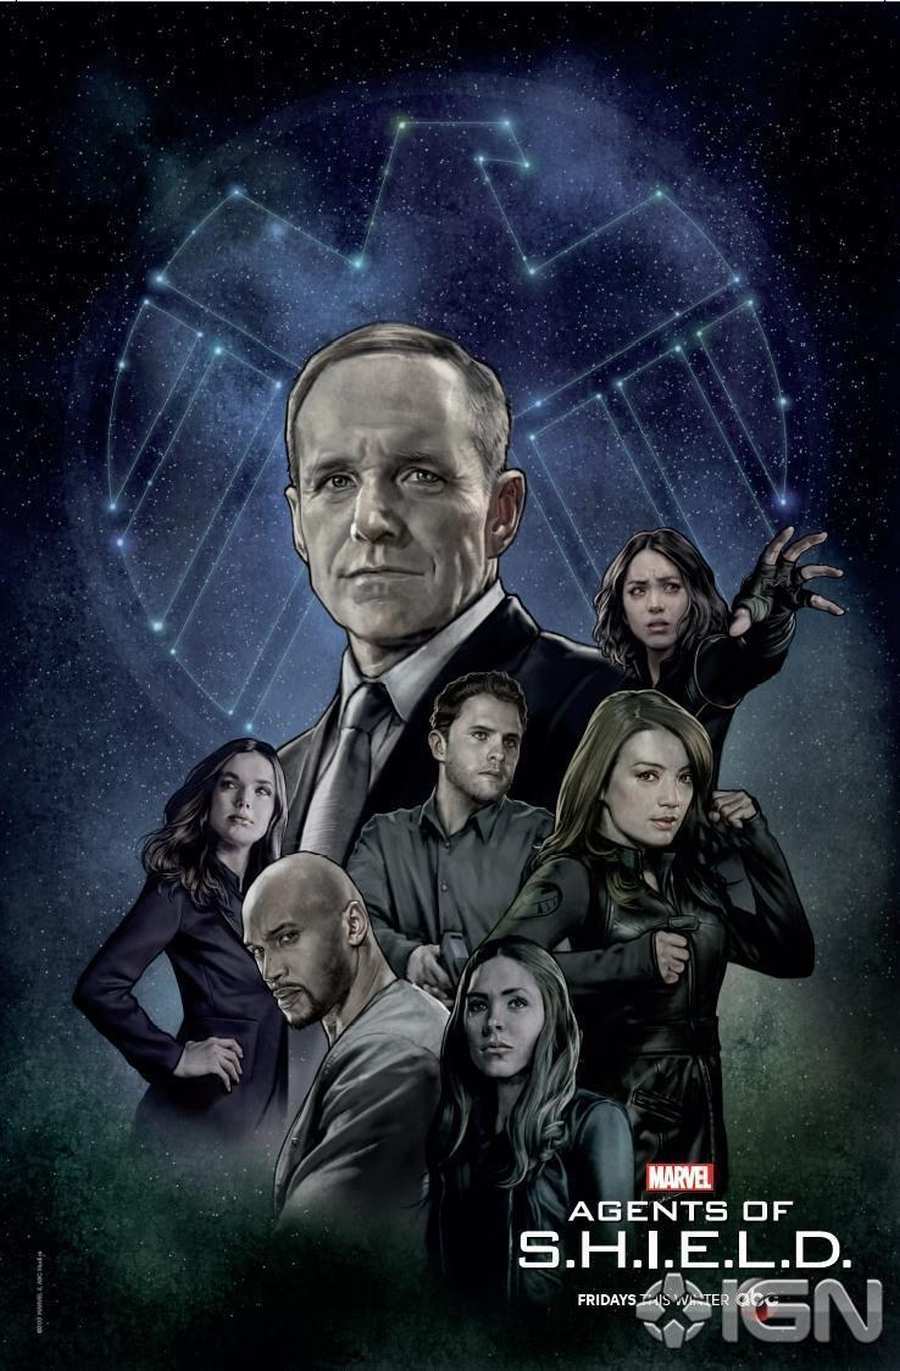 Agents of S.H.I.E.L.D. Jessica Jones